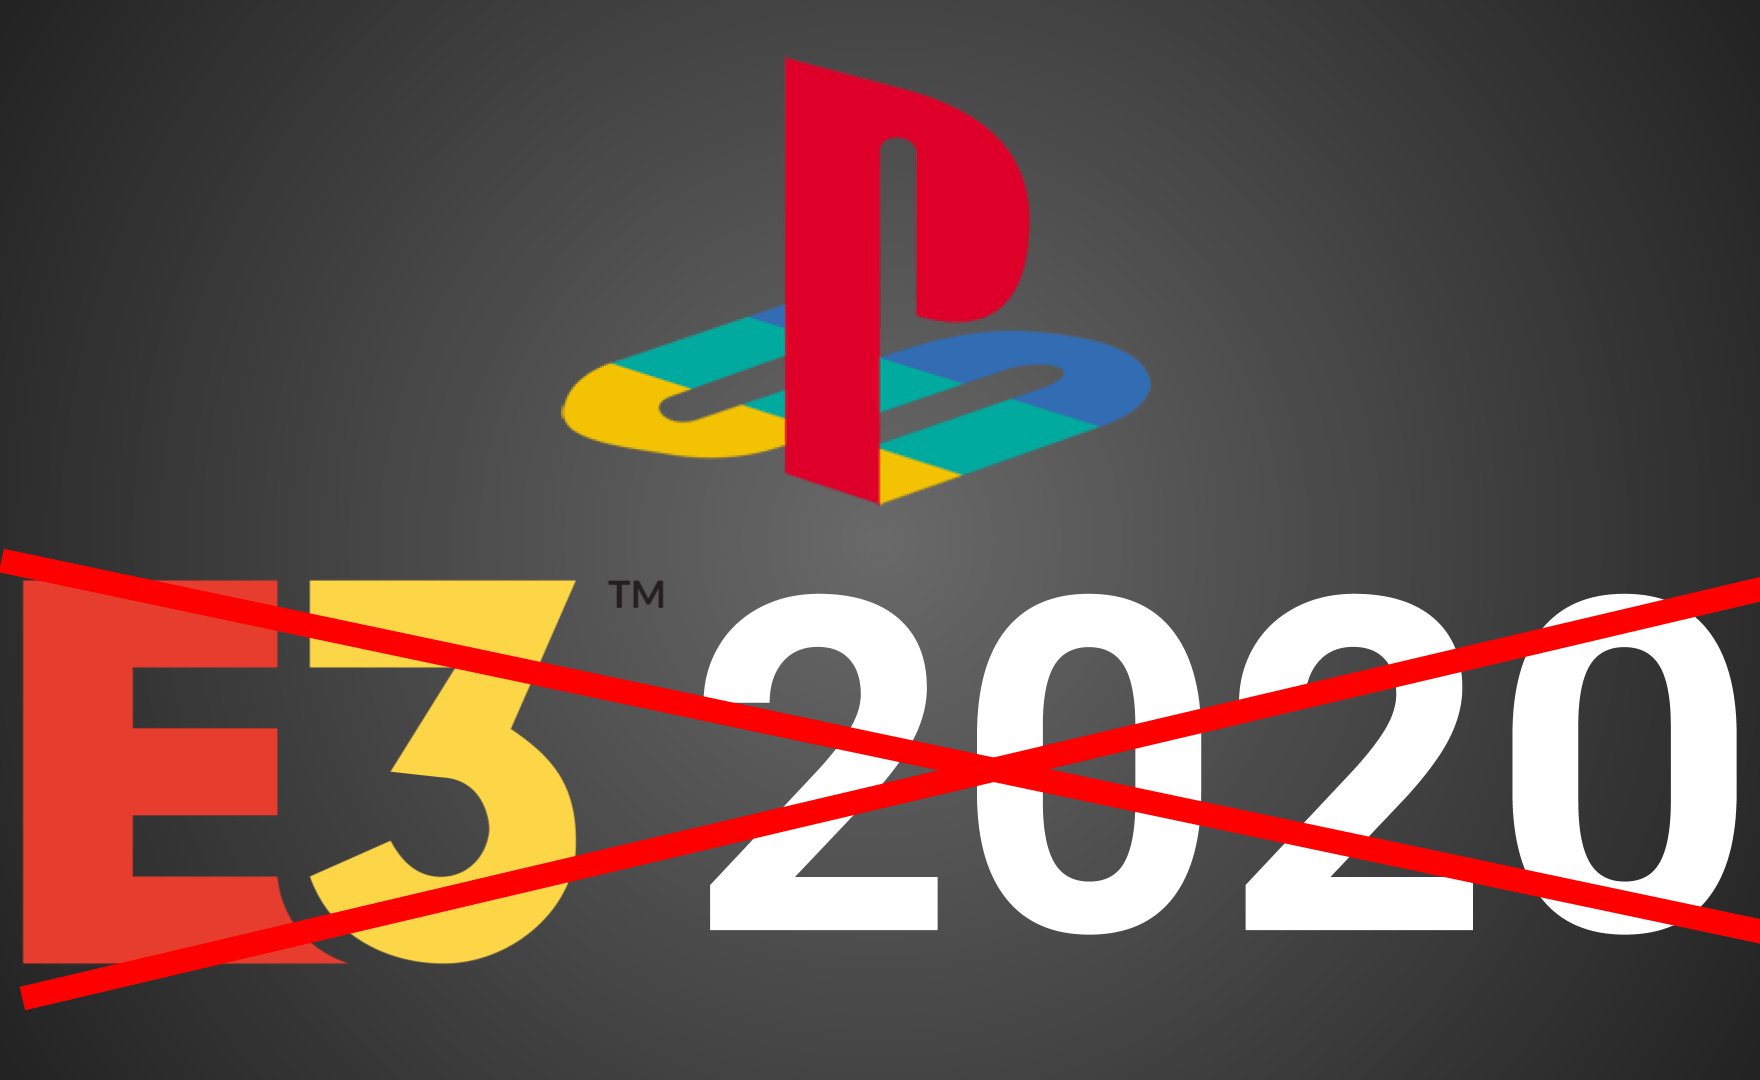 Sony abbandona, l’E3 2020 risponde: “sarà un grande spettacolo”